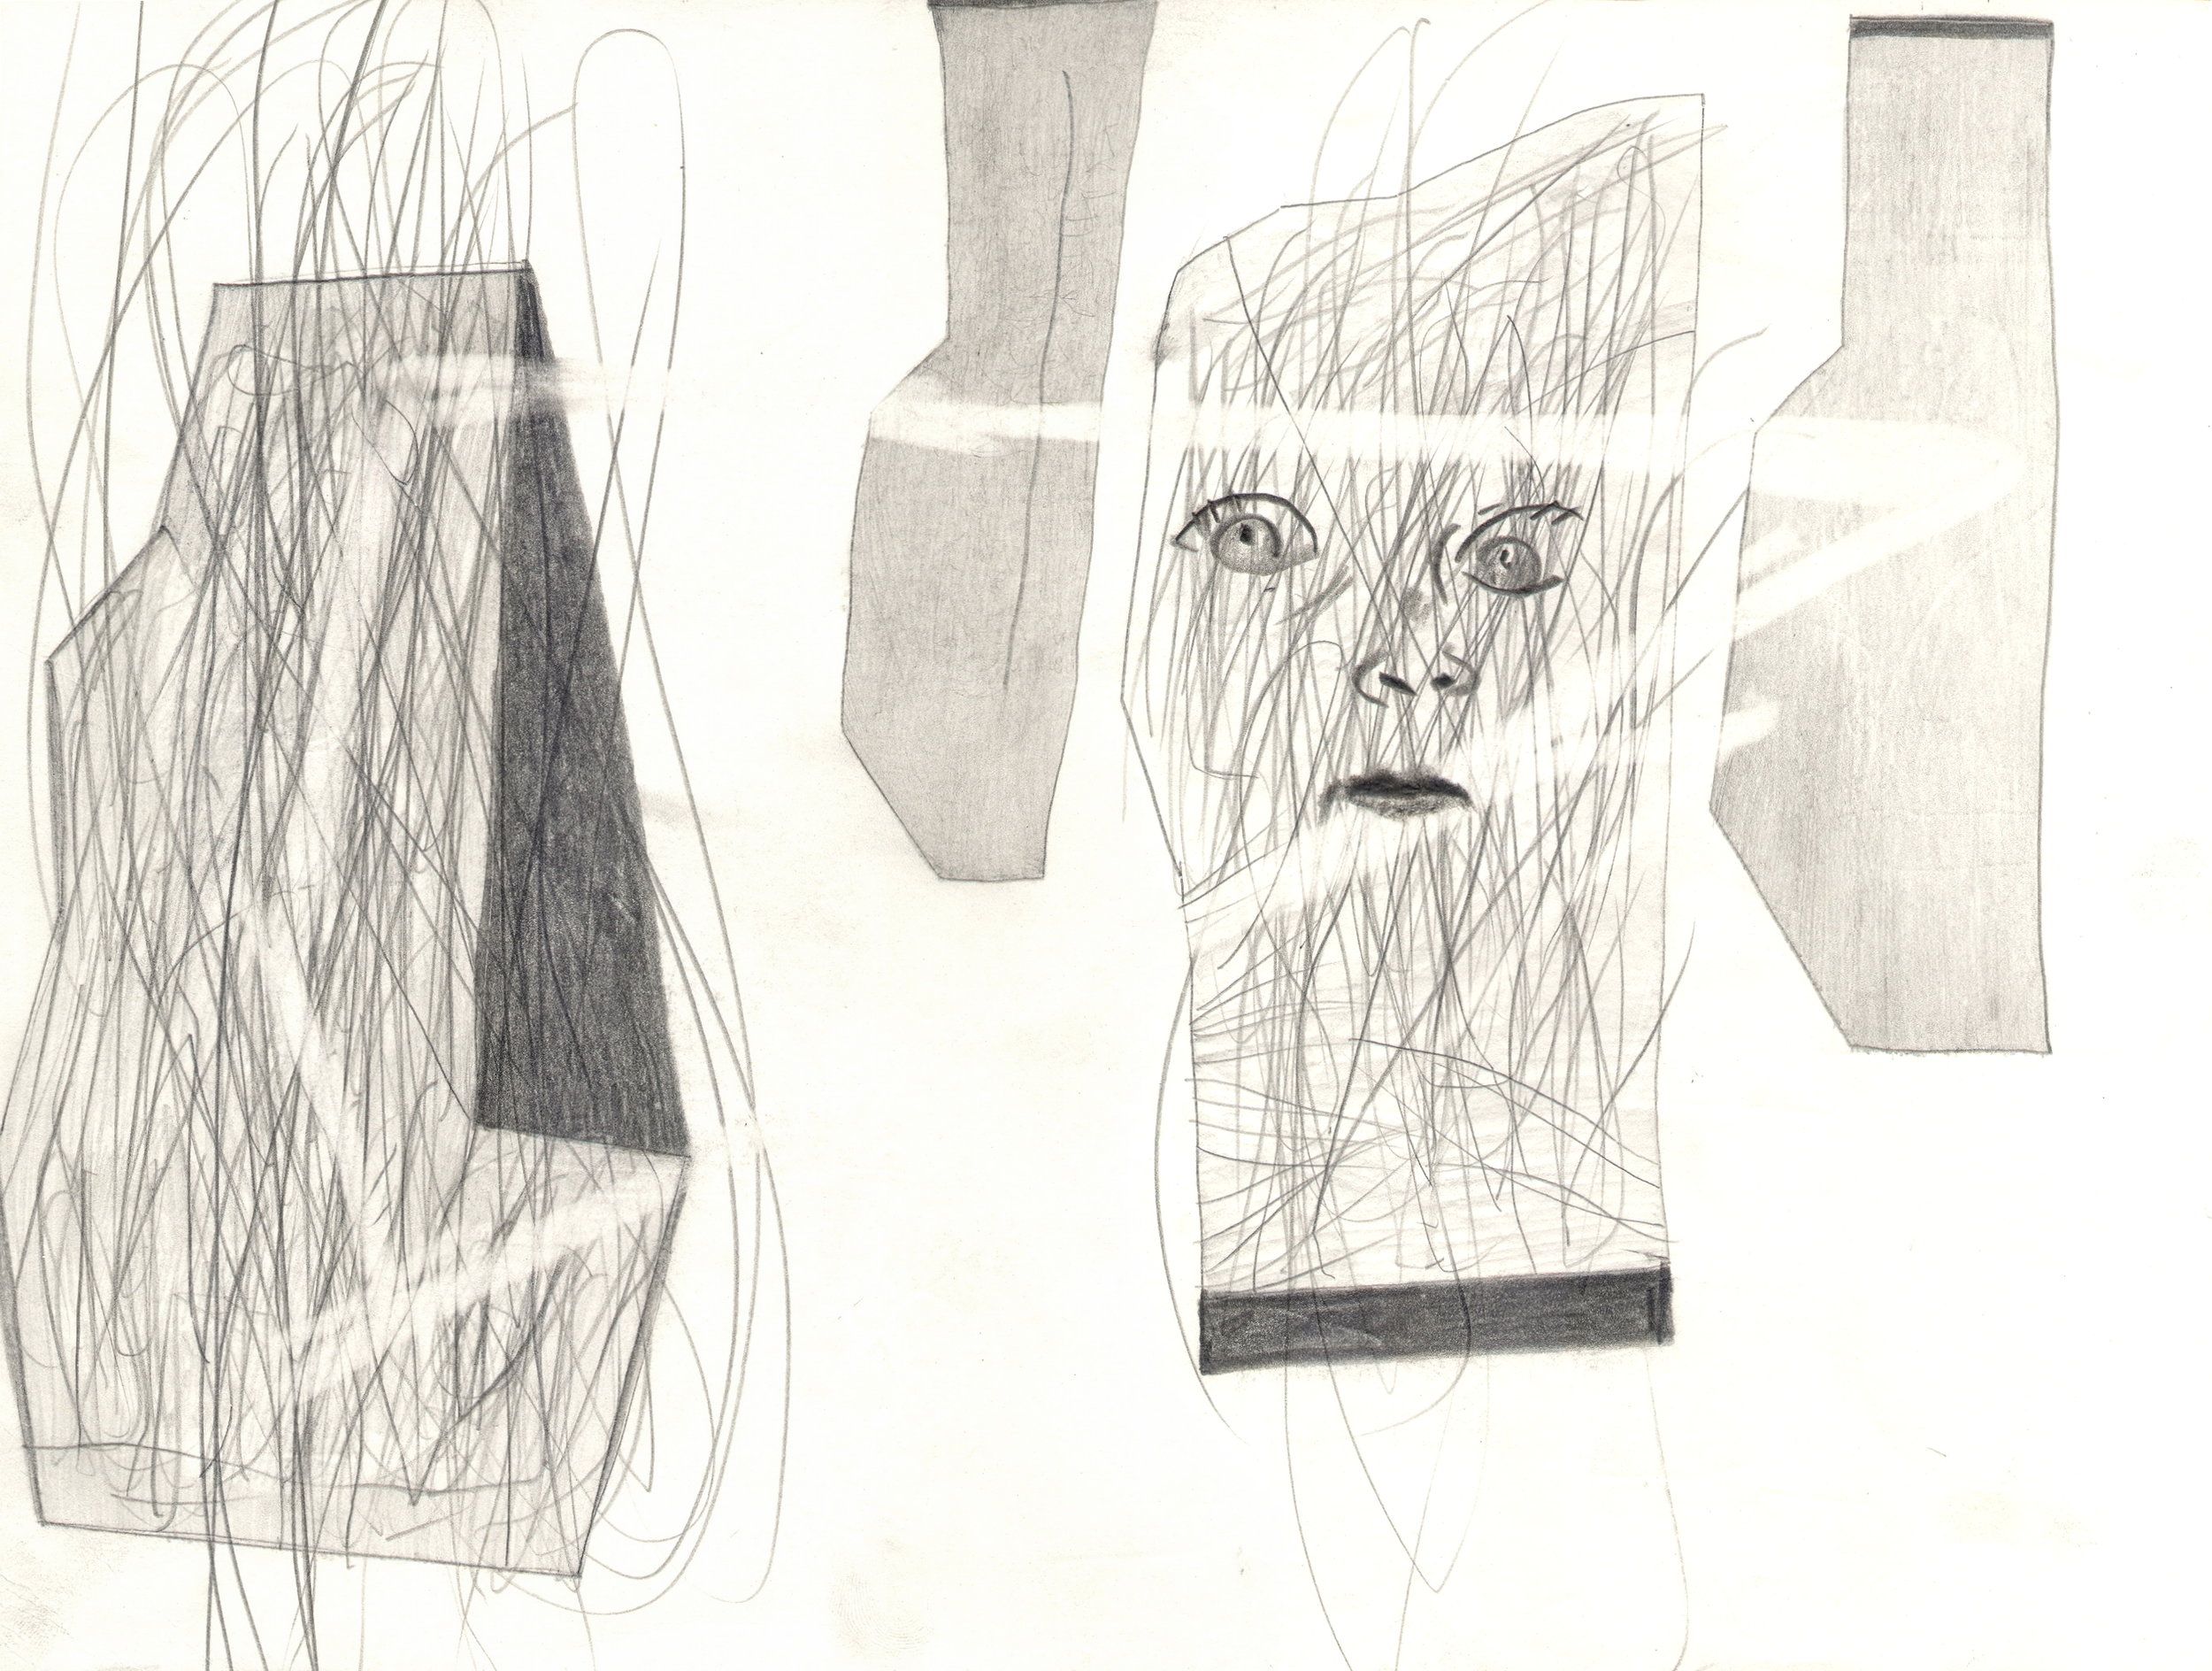  O.T. ( Allegorie Psychologie ), 2014  26x35.5cm, Bleistift auf Papier 